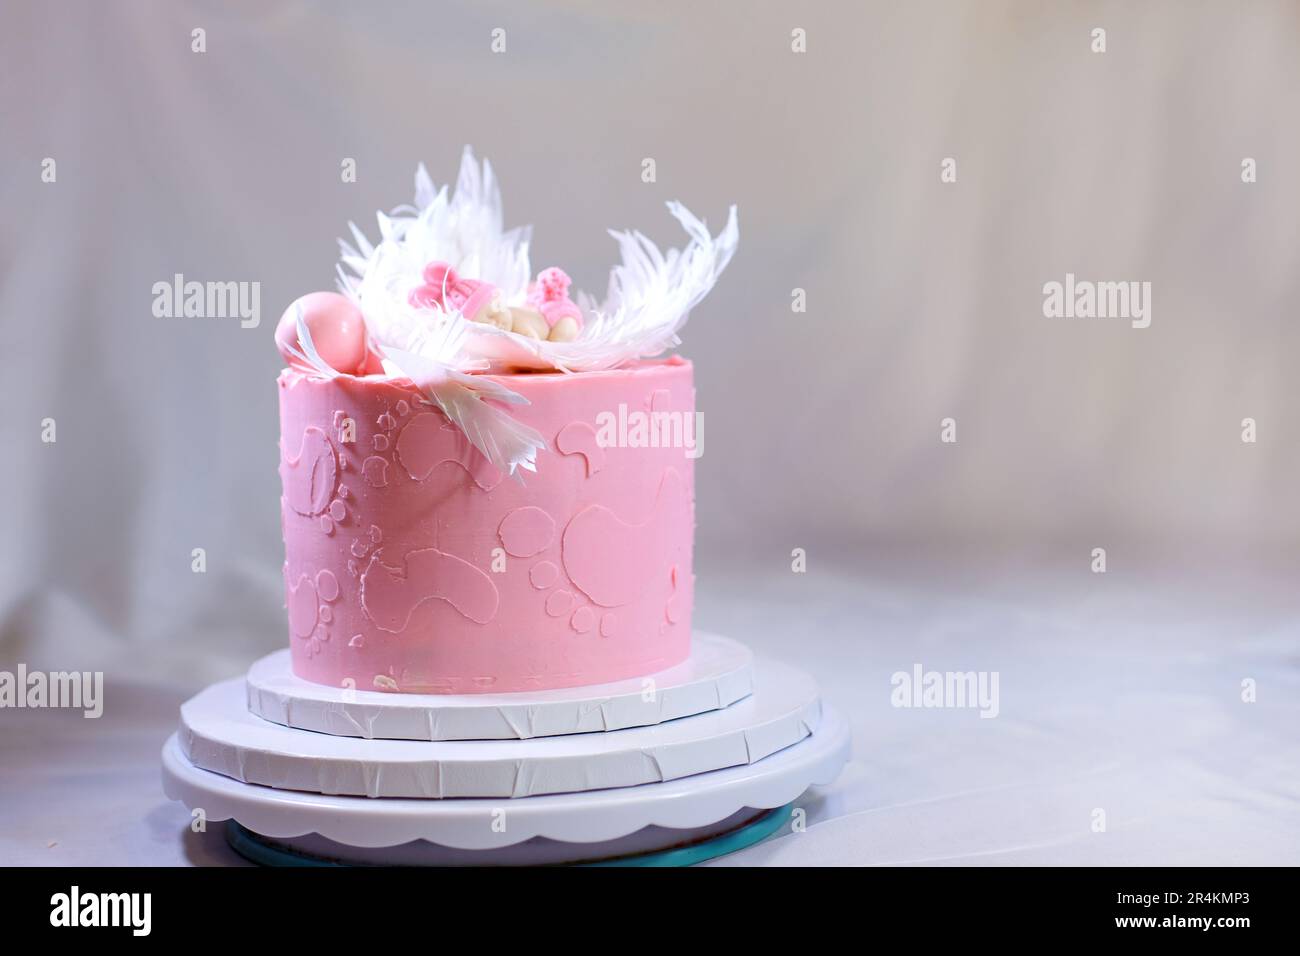 Dekoration eines Kuchens für eine Familie Taufe rosa Kuchen mit Fußabdrücken eines kleinen Kindes auf Engelsflügeln und Baby in rosa Windel ein Mädchen, wie man das Geschlecht des Kindes mithilfe eines Kuchens herausfinden kann Stockfoto